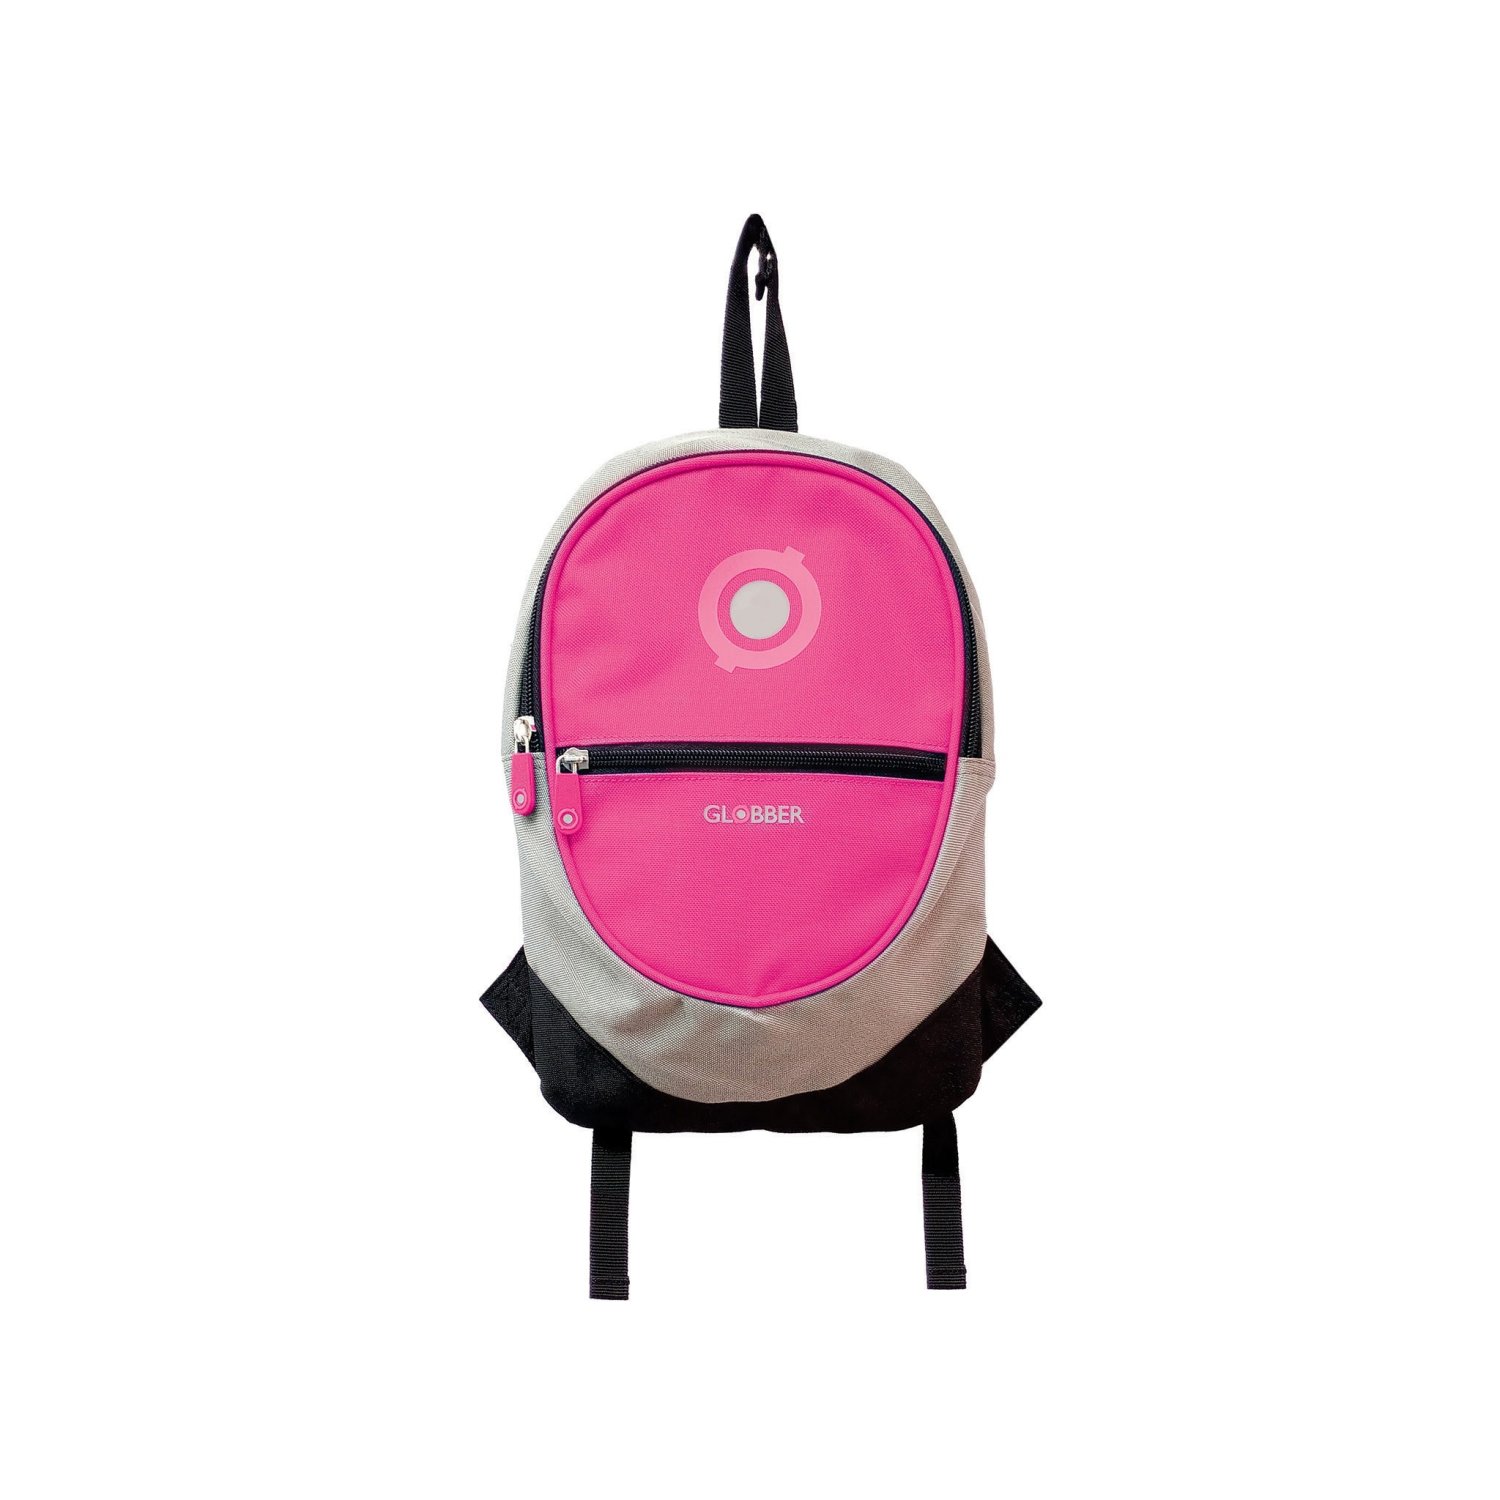 Велорюкзак Globber BACKPACK JUNIOR, детский, розовый, 524-110 велорюкзак globber backpack junior детский голубой 524 101